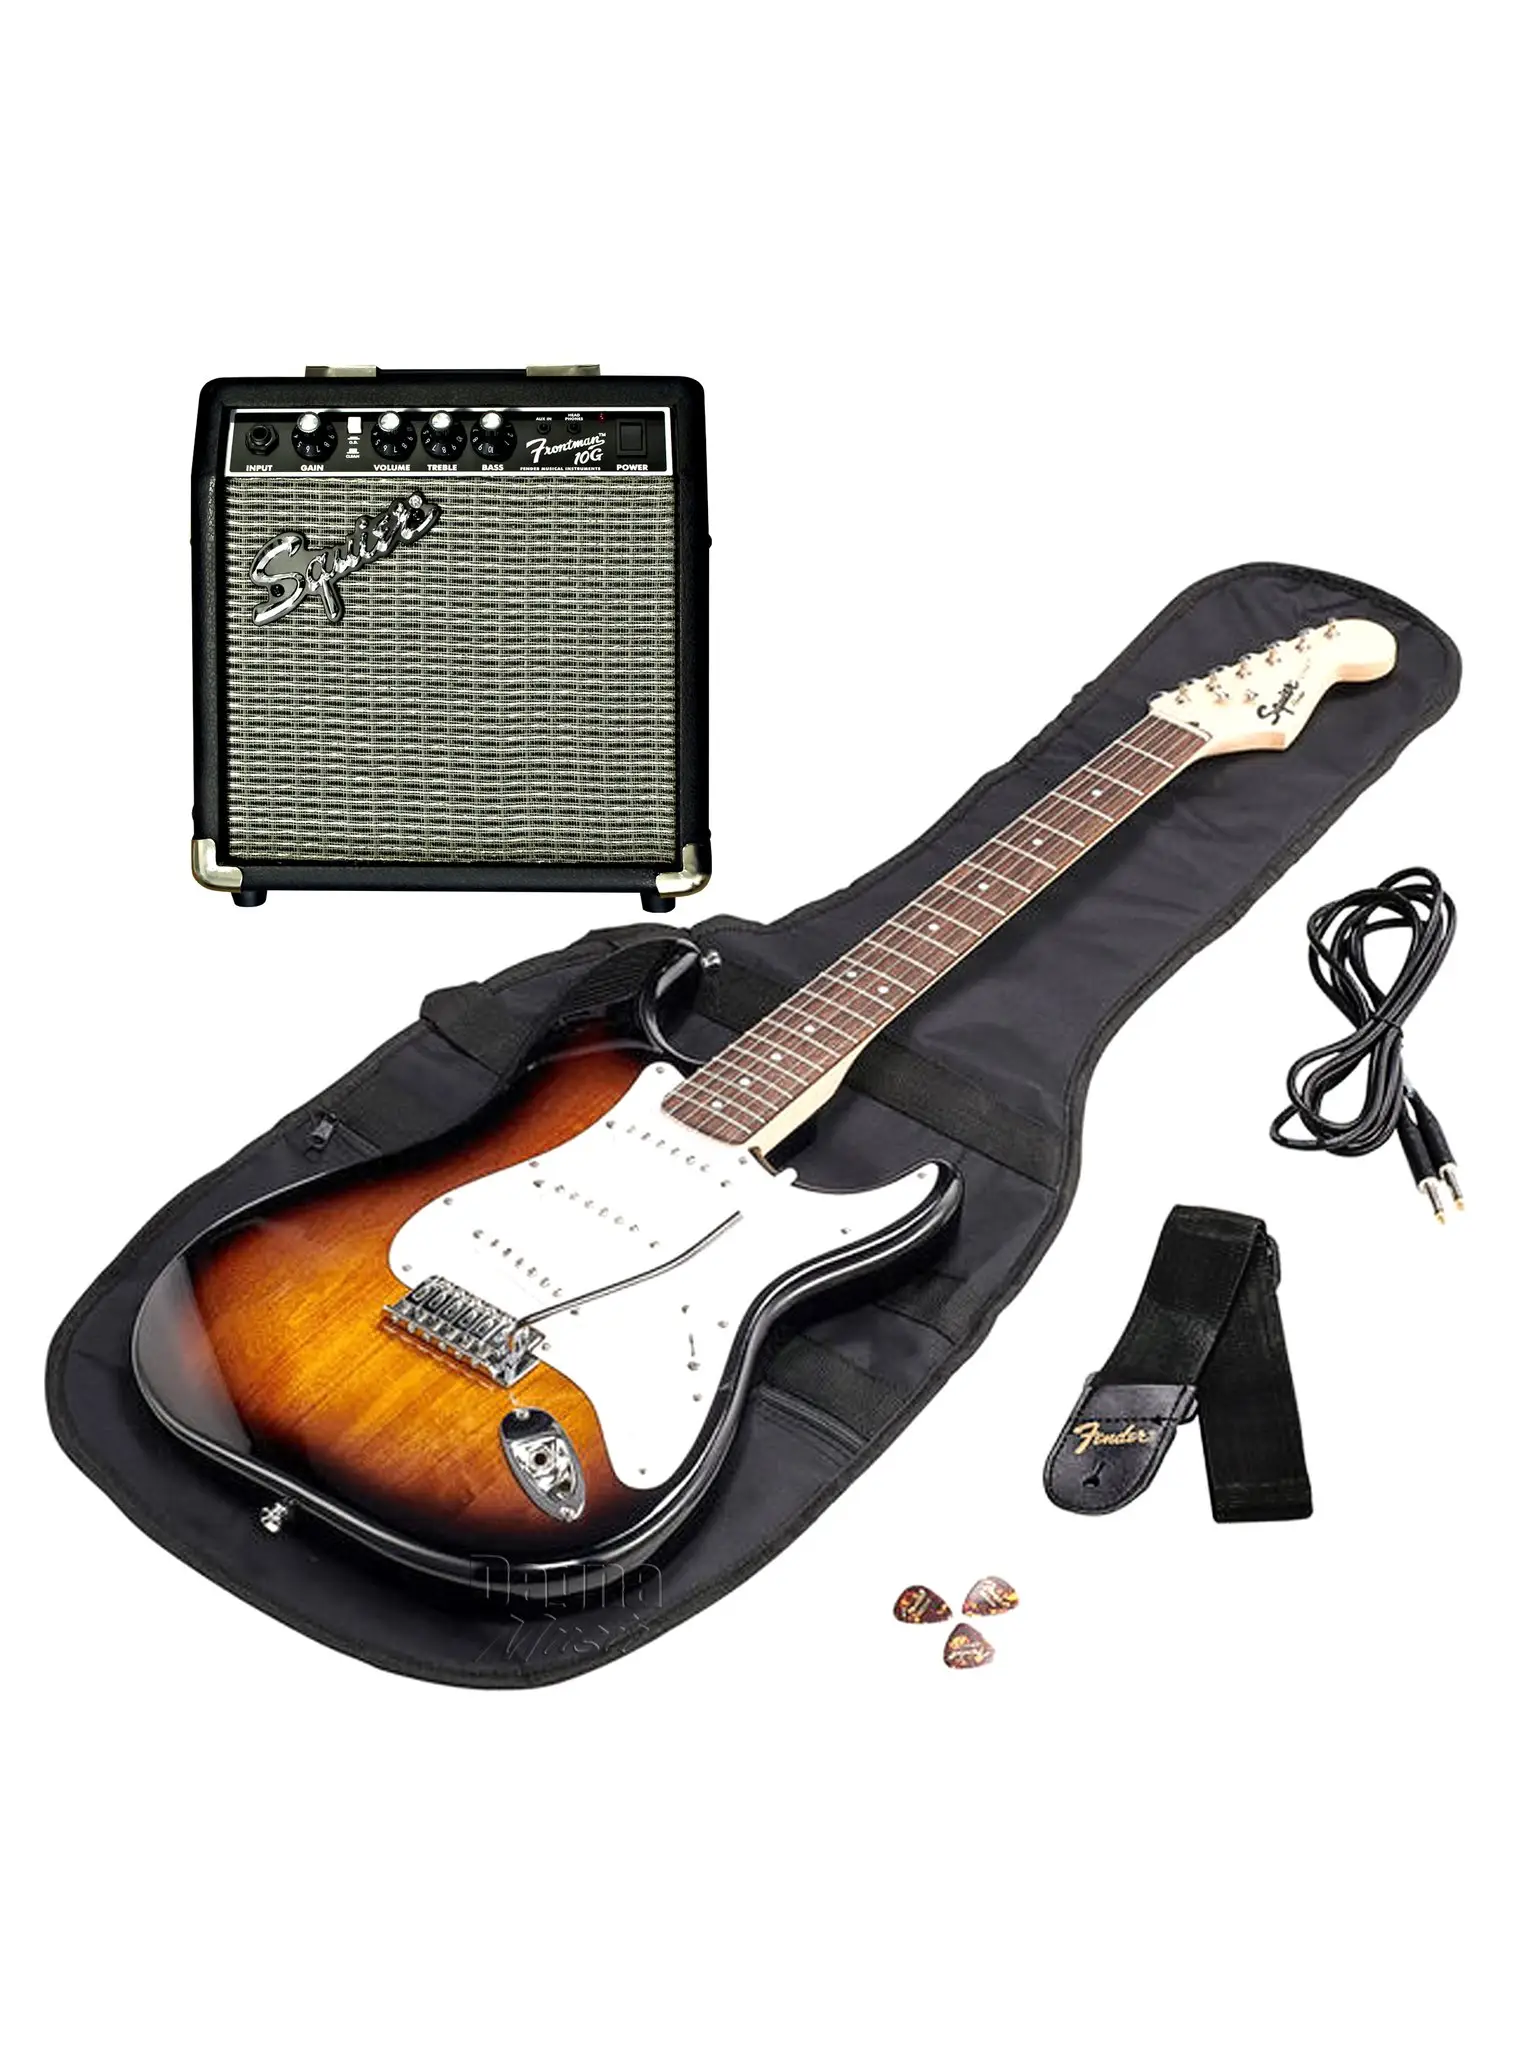 Комплект электрогитары. Электрогитара Fender Stratocaster. Гитарный набор. Гитара комплект. Электрогитара комплект.